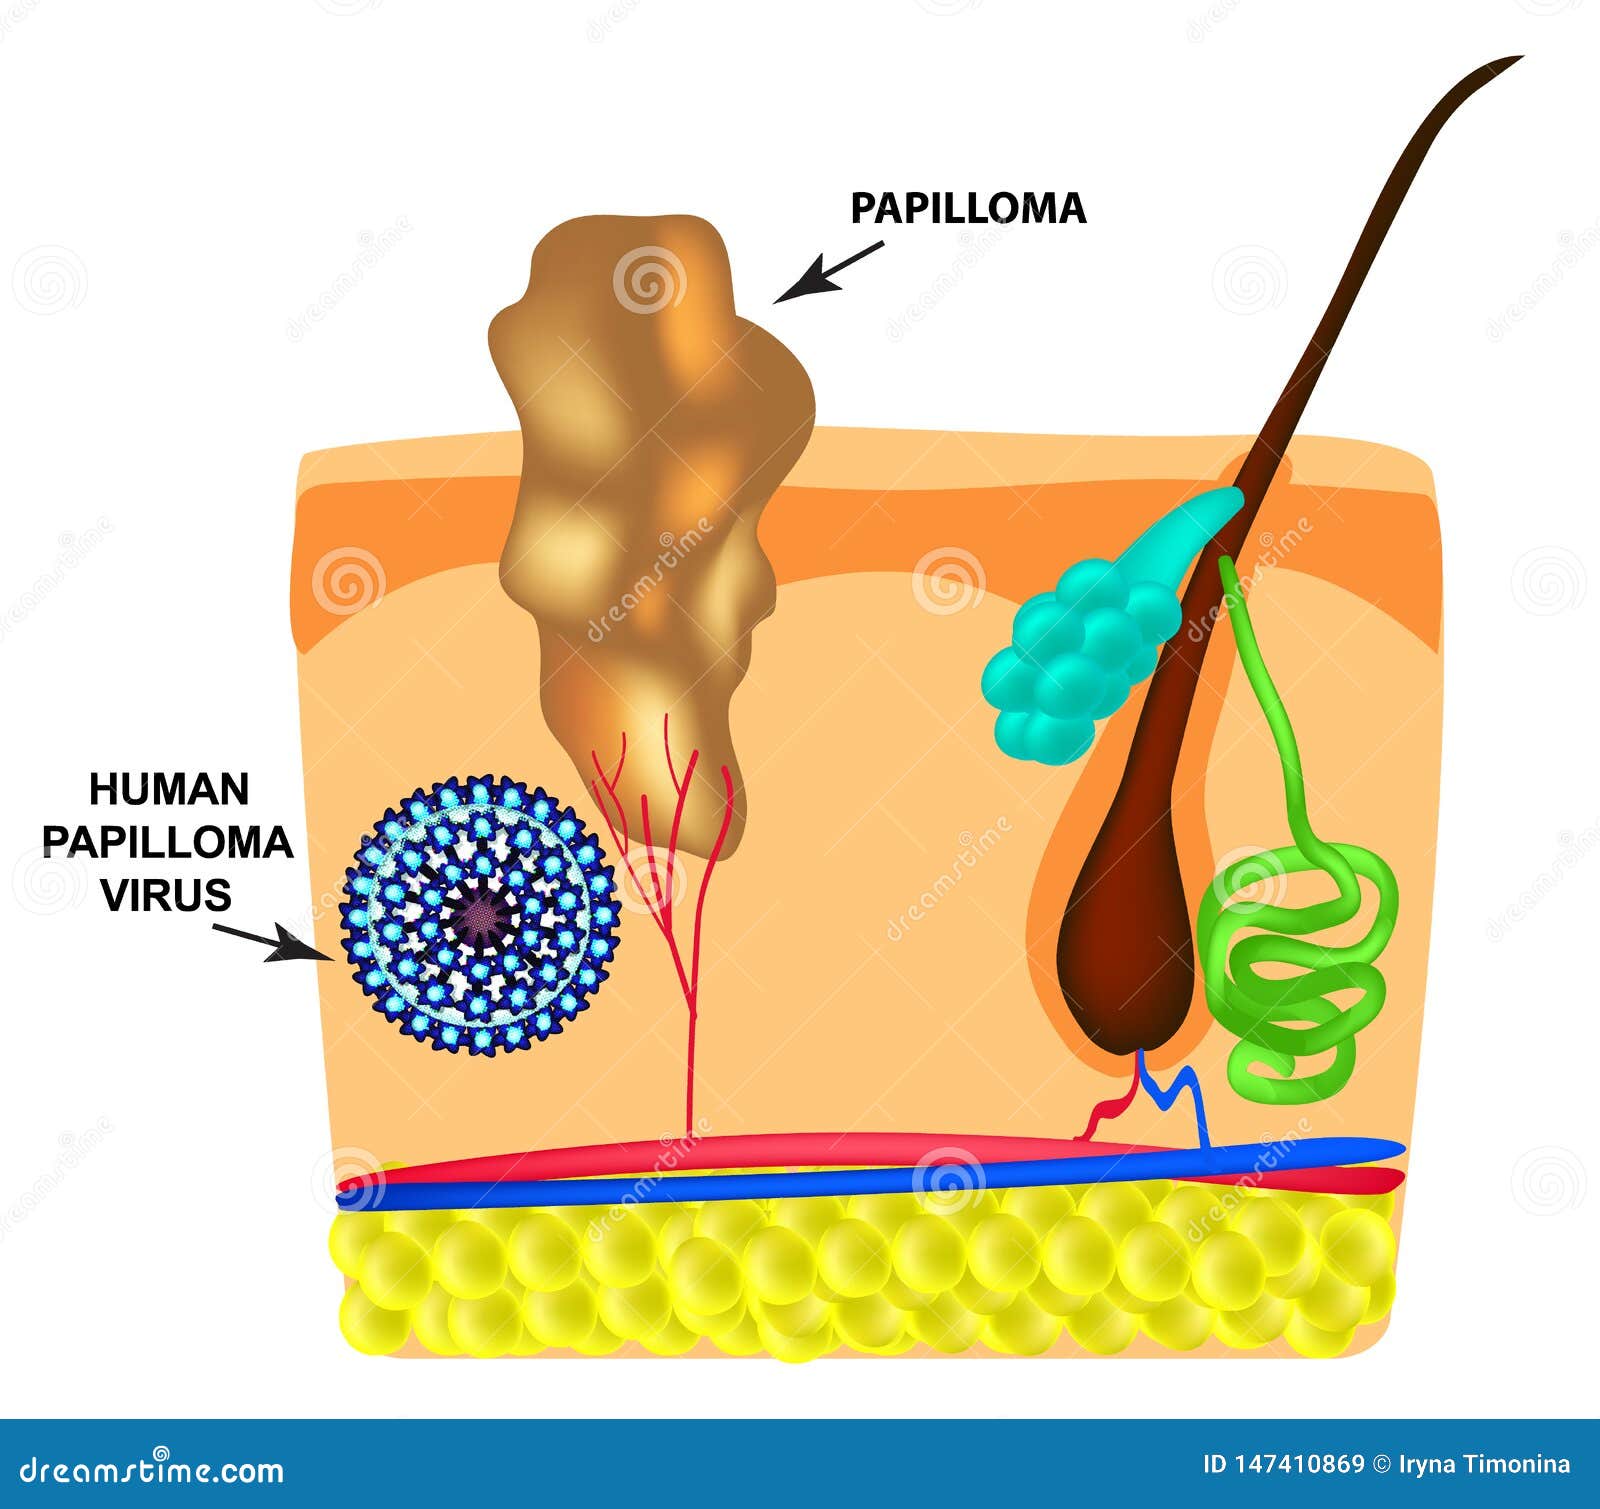 Humán Papillóma Vírus | EgészségKalauz